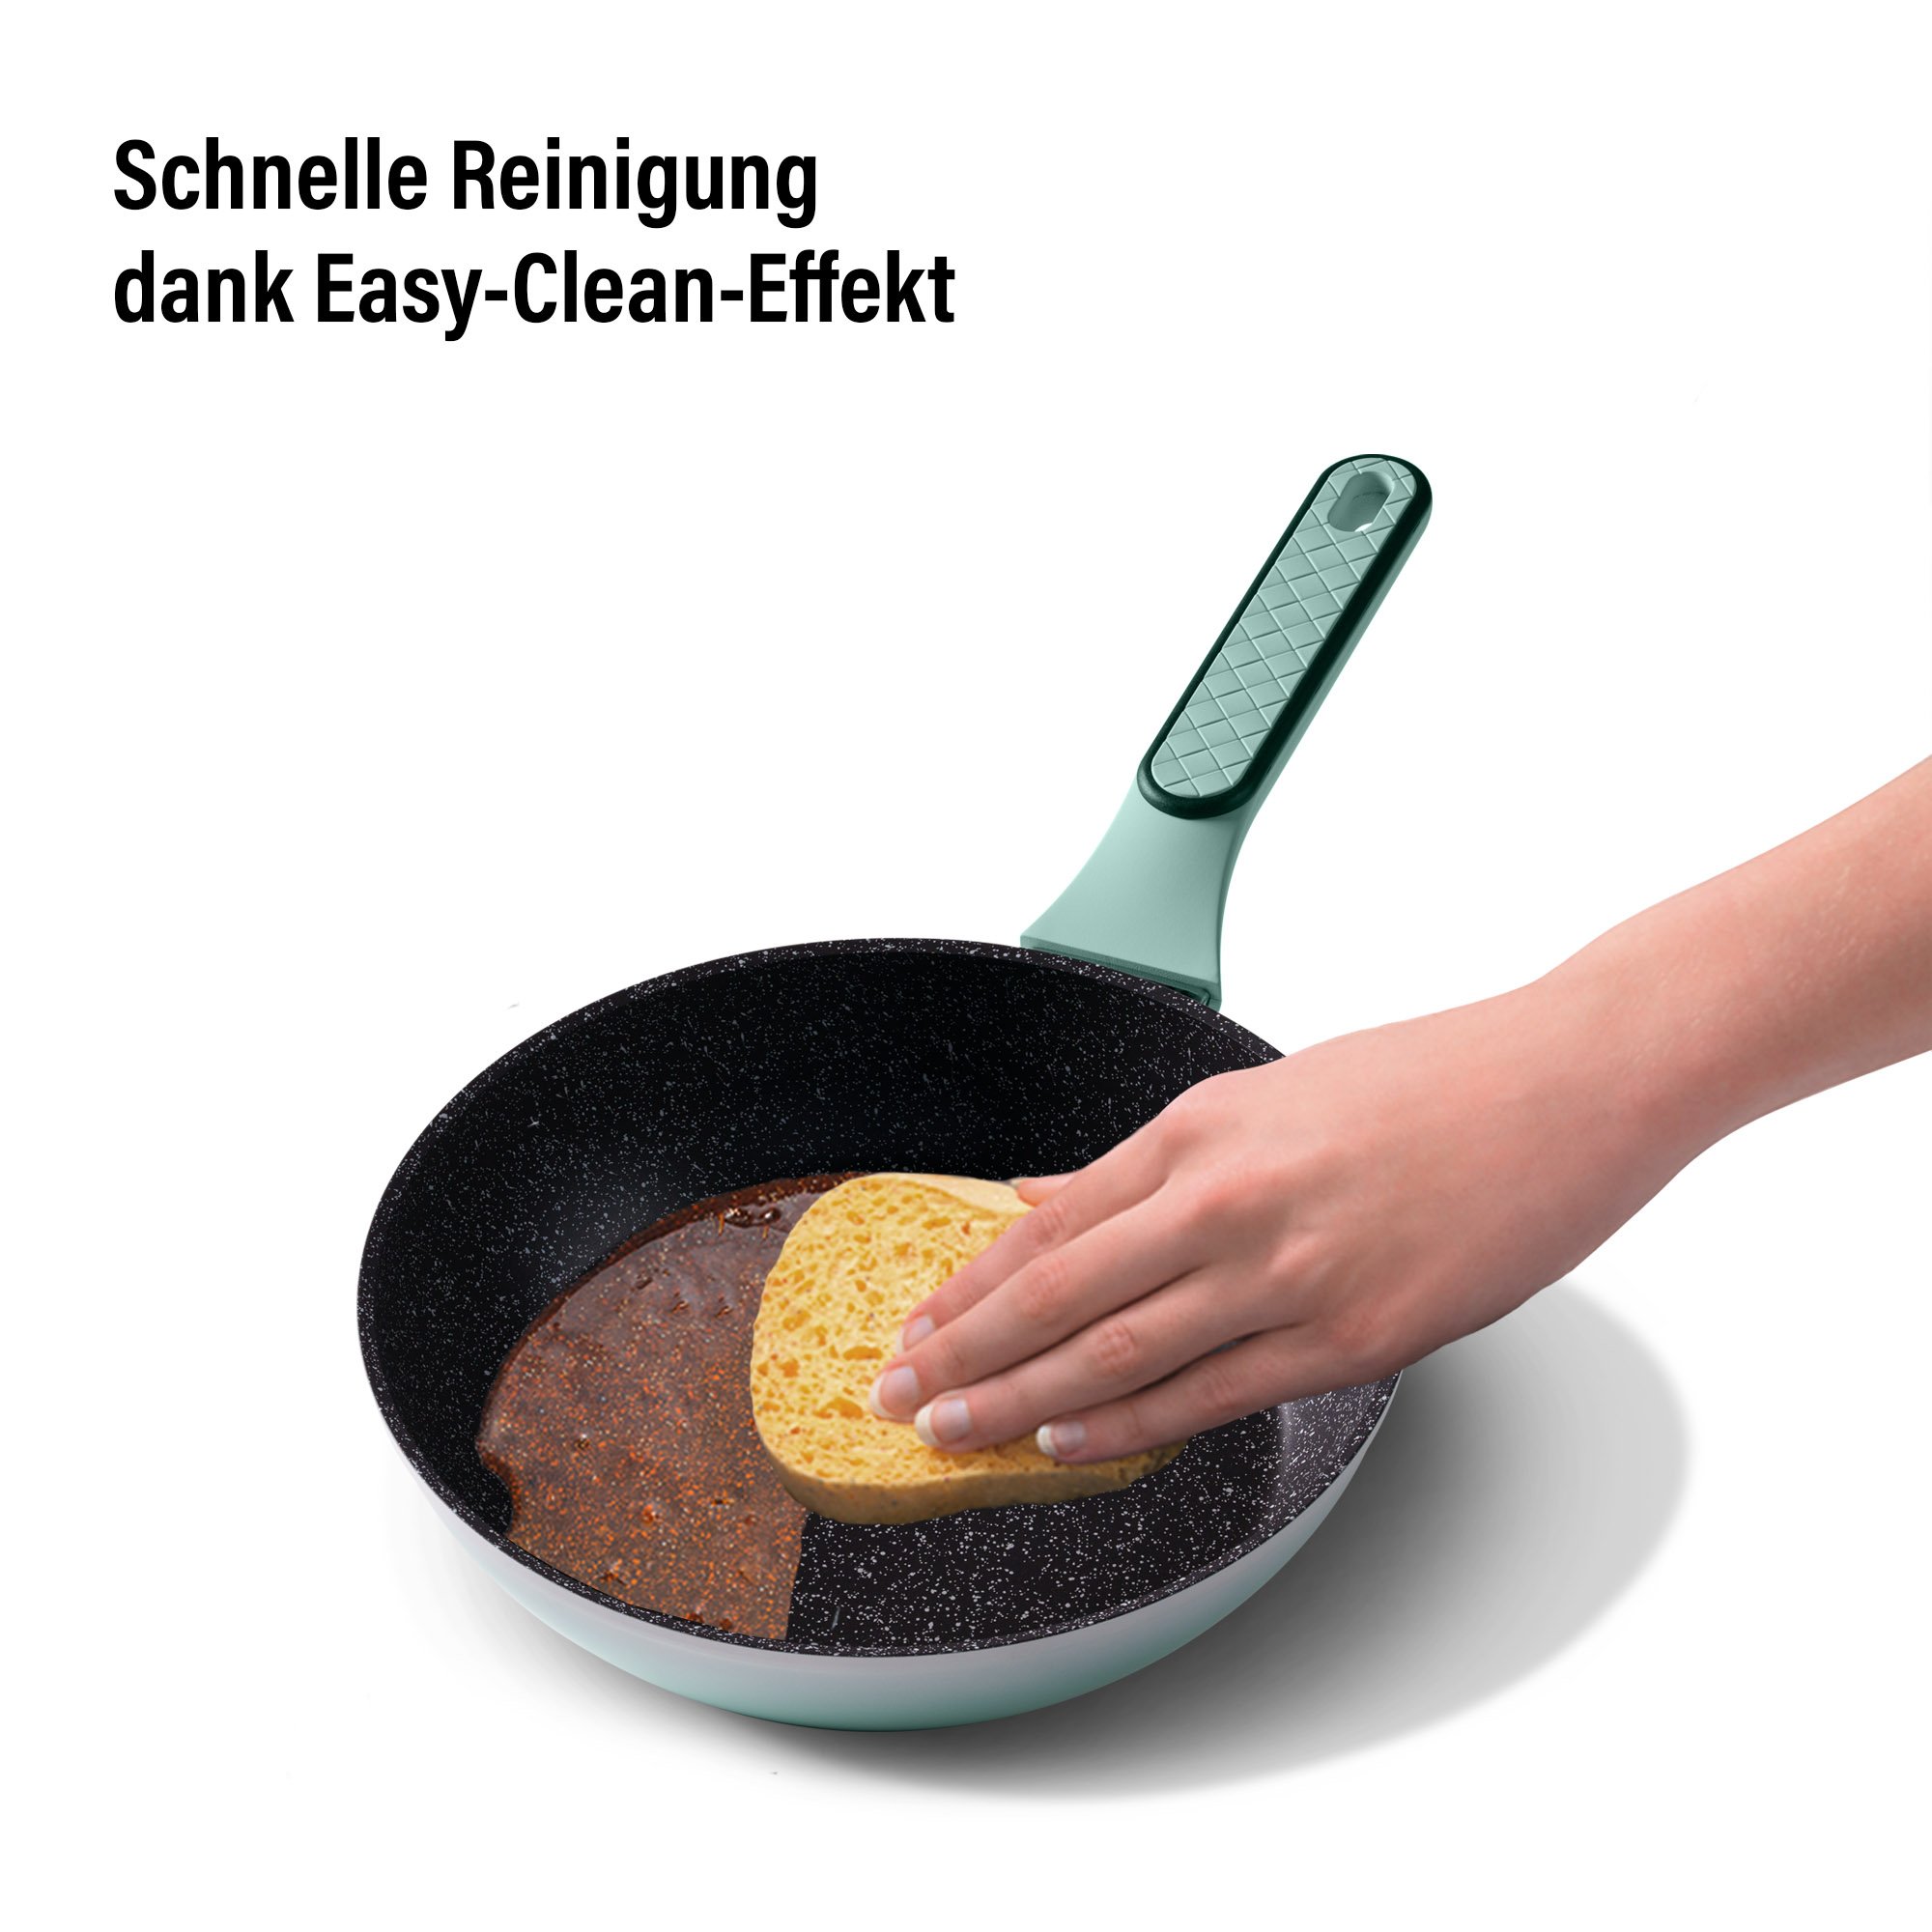 STONELINE® Mint Kochgeschirr-Set 11-teilig mit Deckeln, beschichtete Töpfe & Pfannen